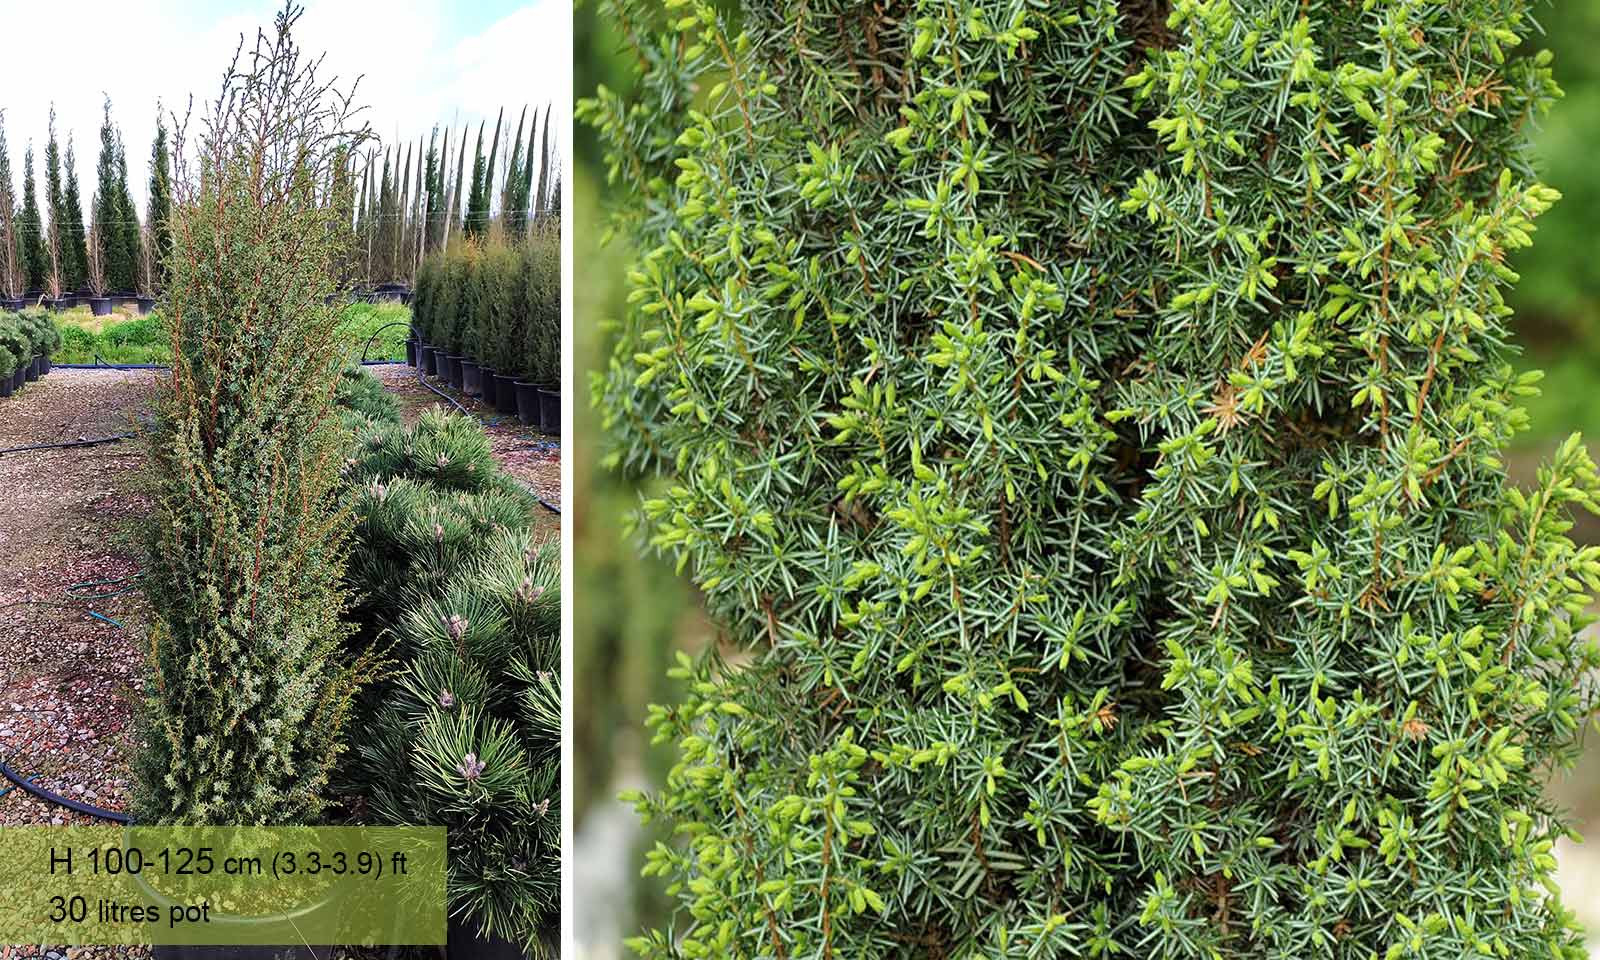 Irish Juniper (Juniperus Communis 'Hibernica')